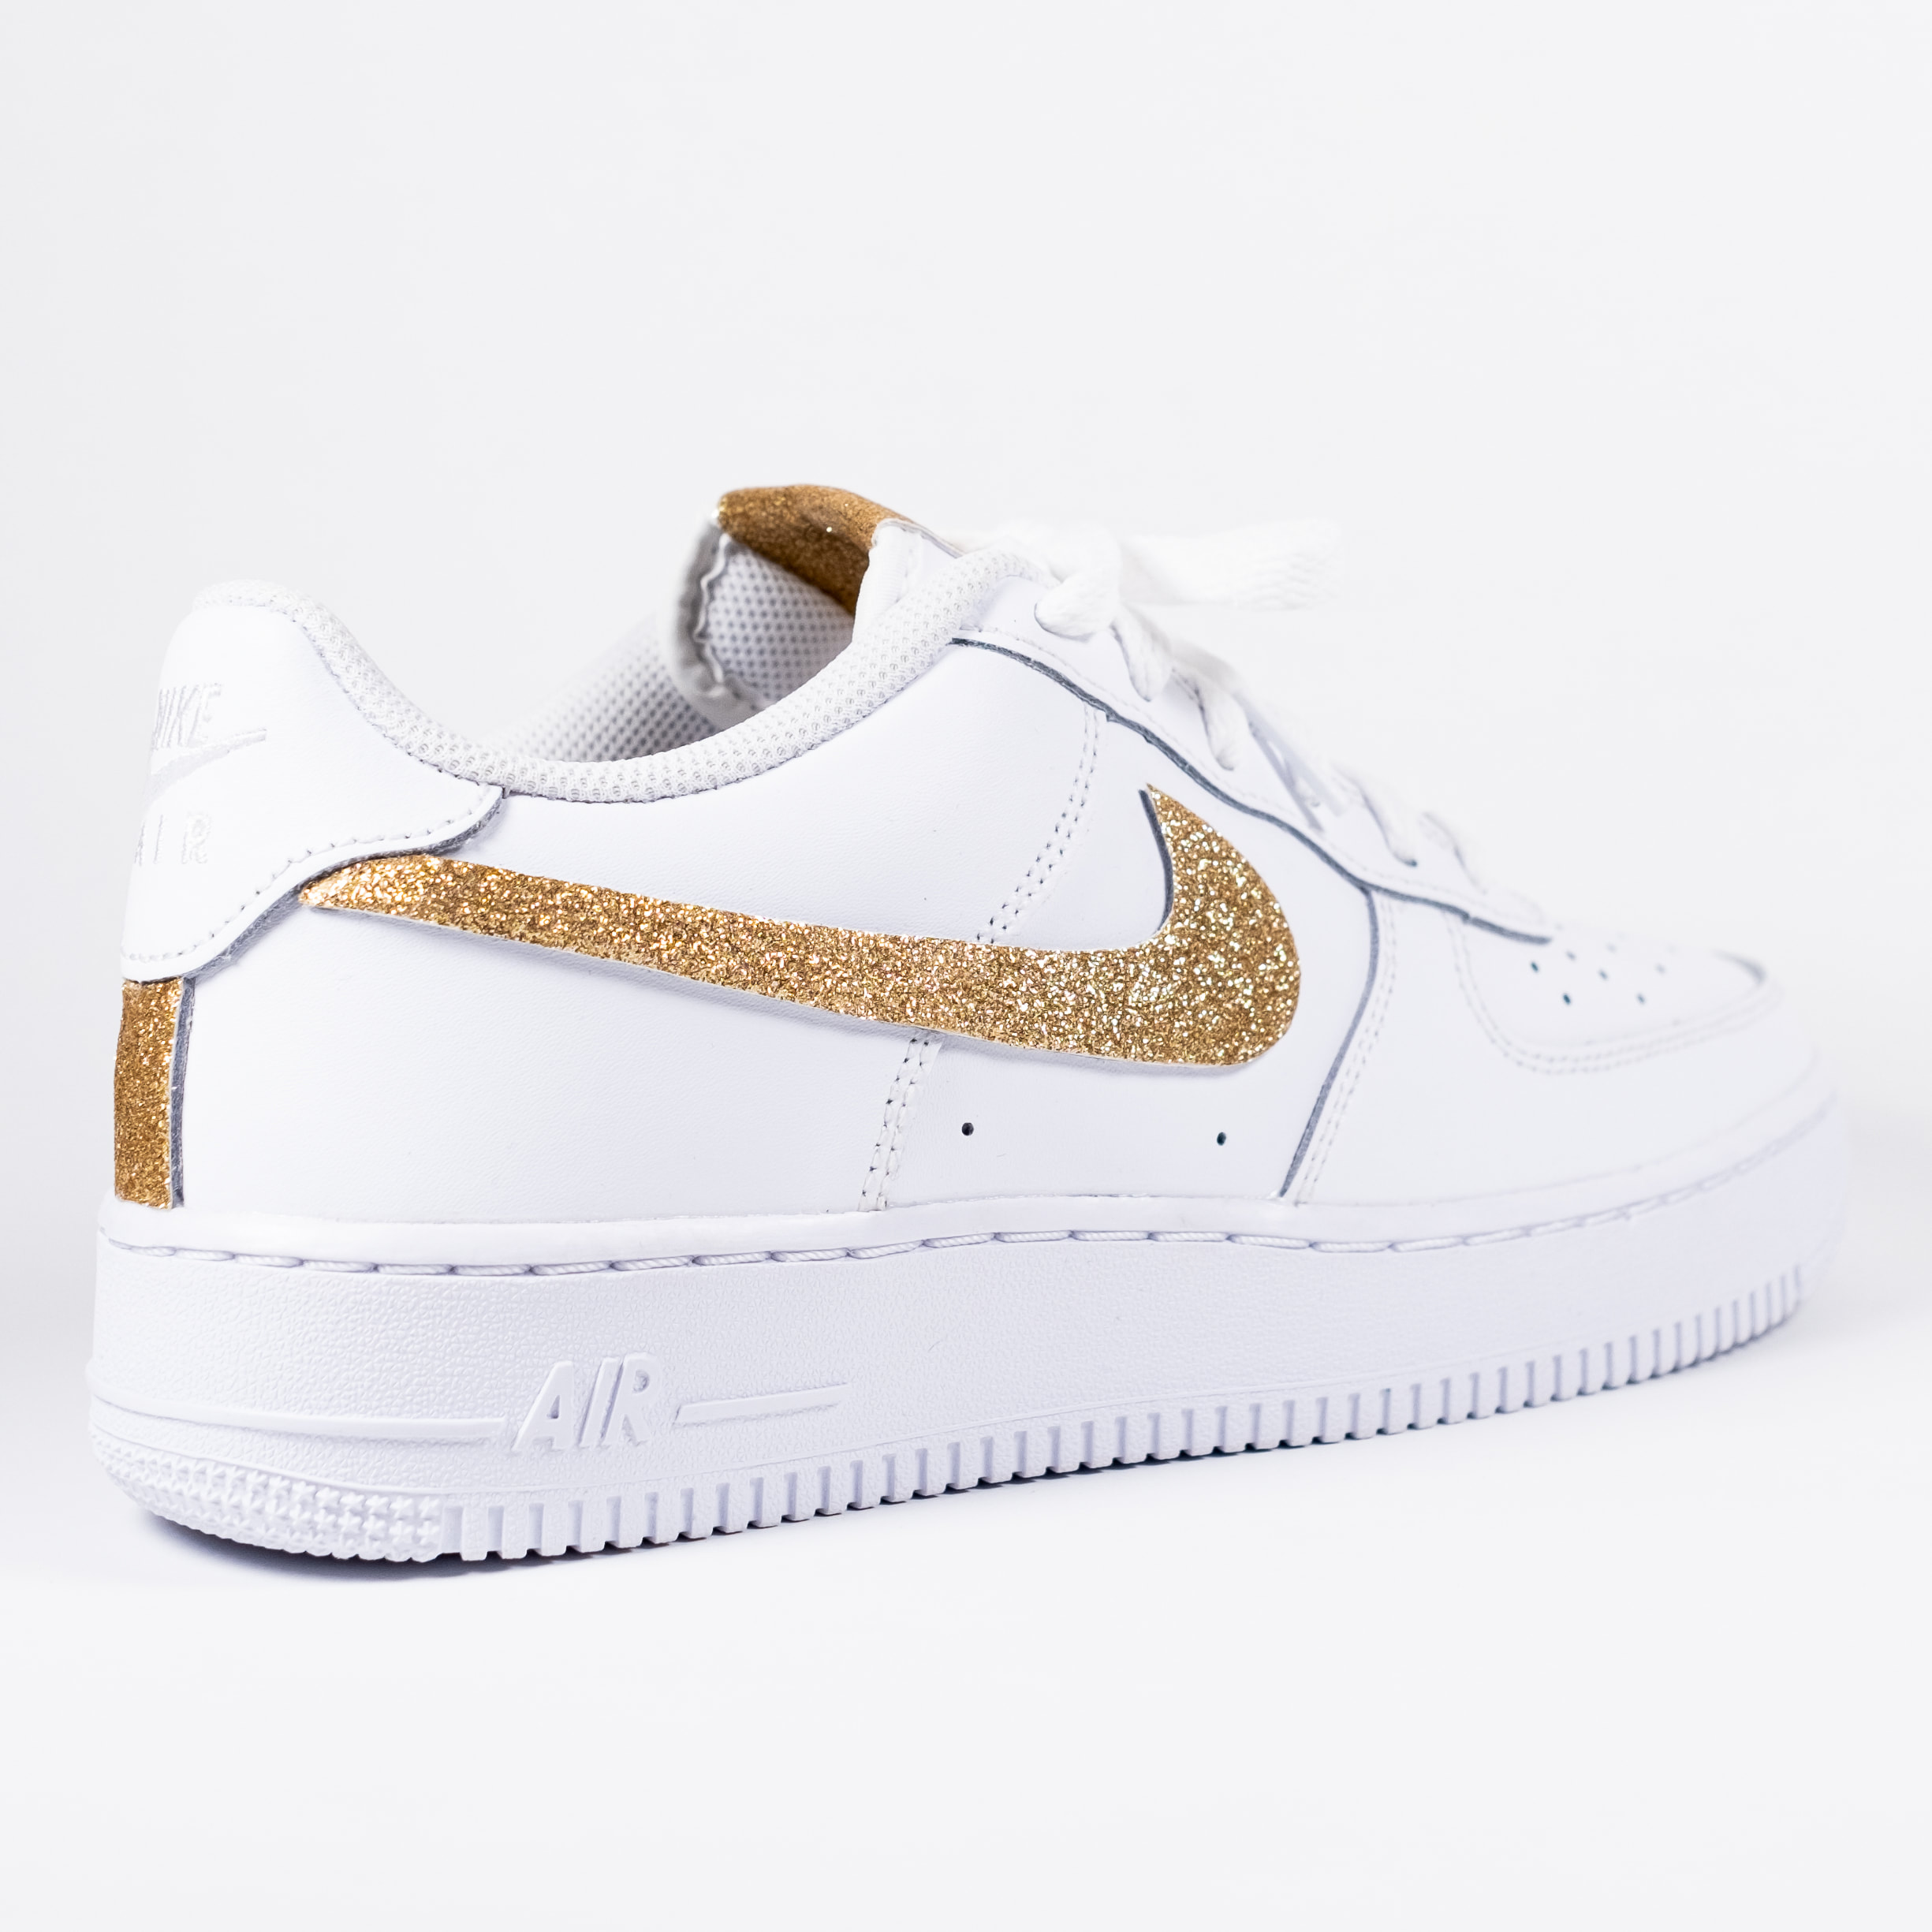 capitán poco claro monte Vesubio Nike Air Force 1 White Custom 'Gold Glitter' Edition